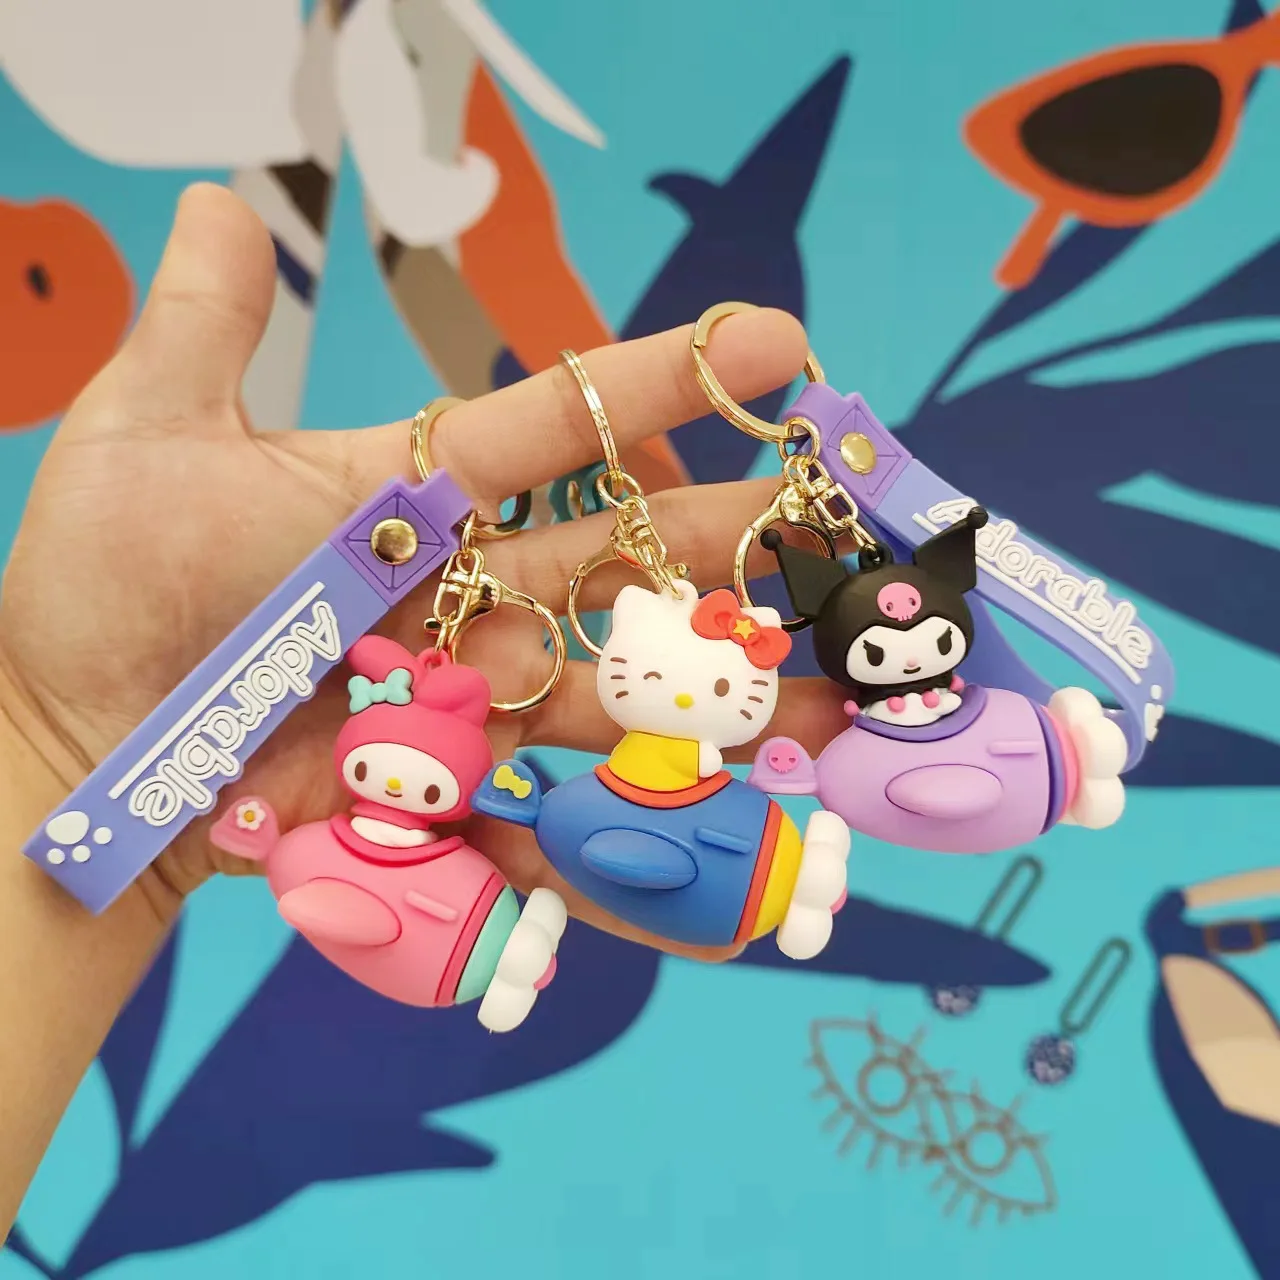 Sanrio Брелок Hello Kitty Kuromi My Melody, Милый Мультяшный брелок, подвеска для сумки, автомобильный брелок, креативная сумка, очаровательные аксессуары